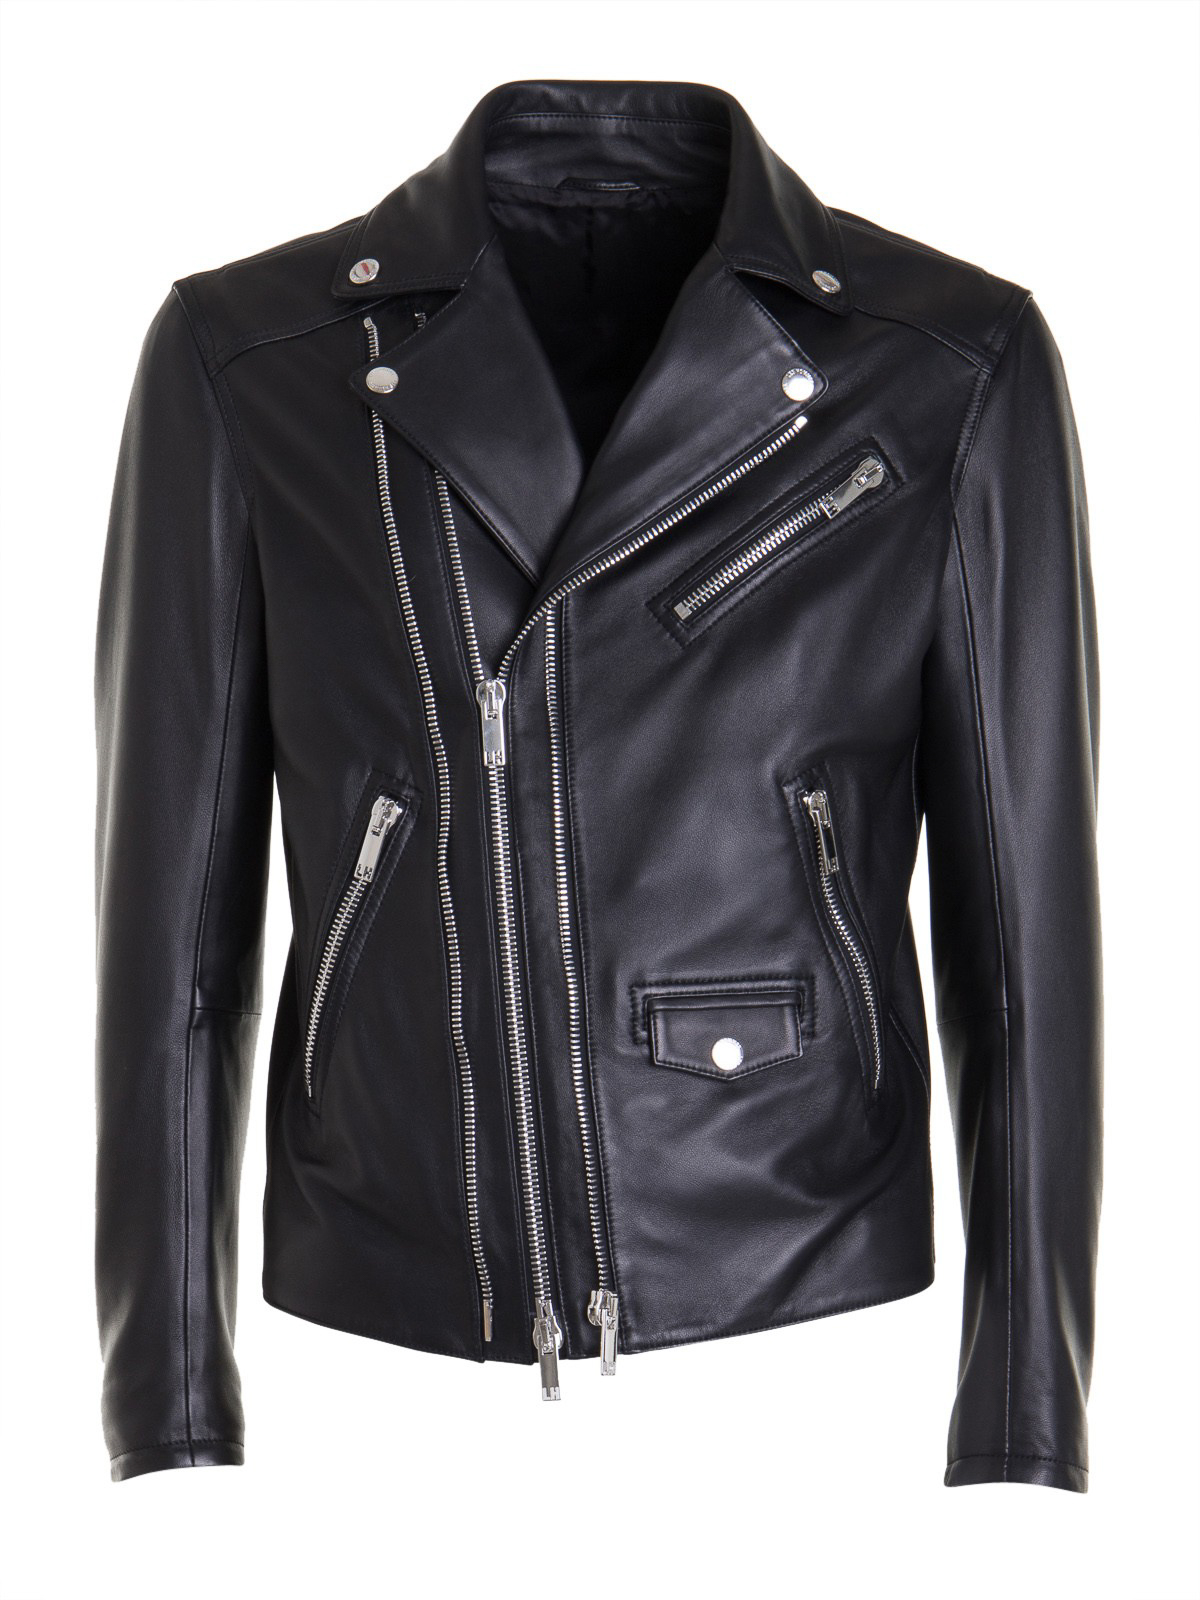 Leather jacket Les Hommes - Black leather biker jacket - LKL220158U9000